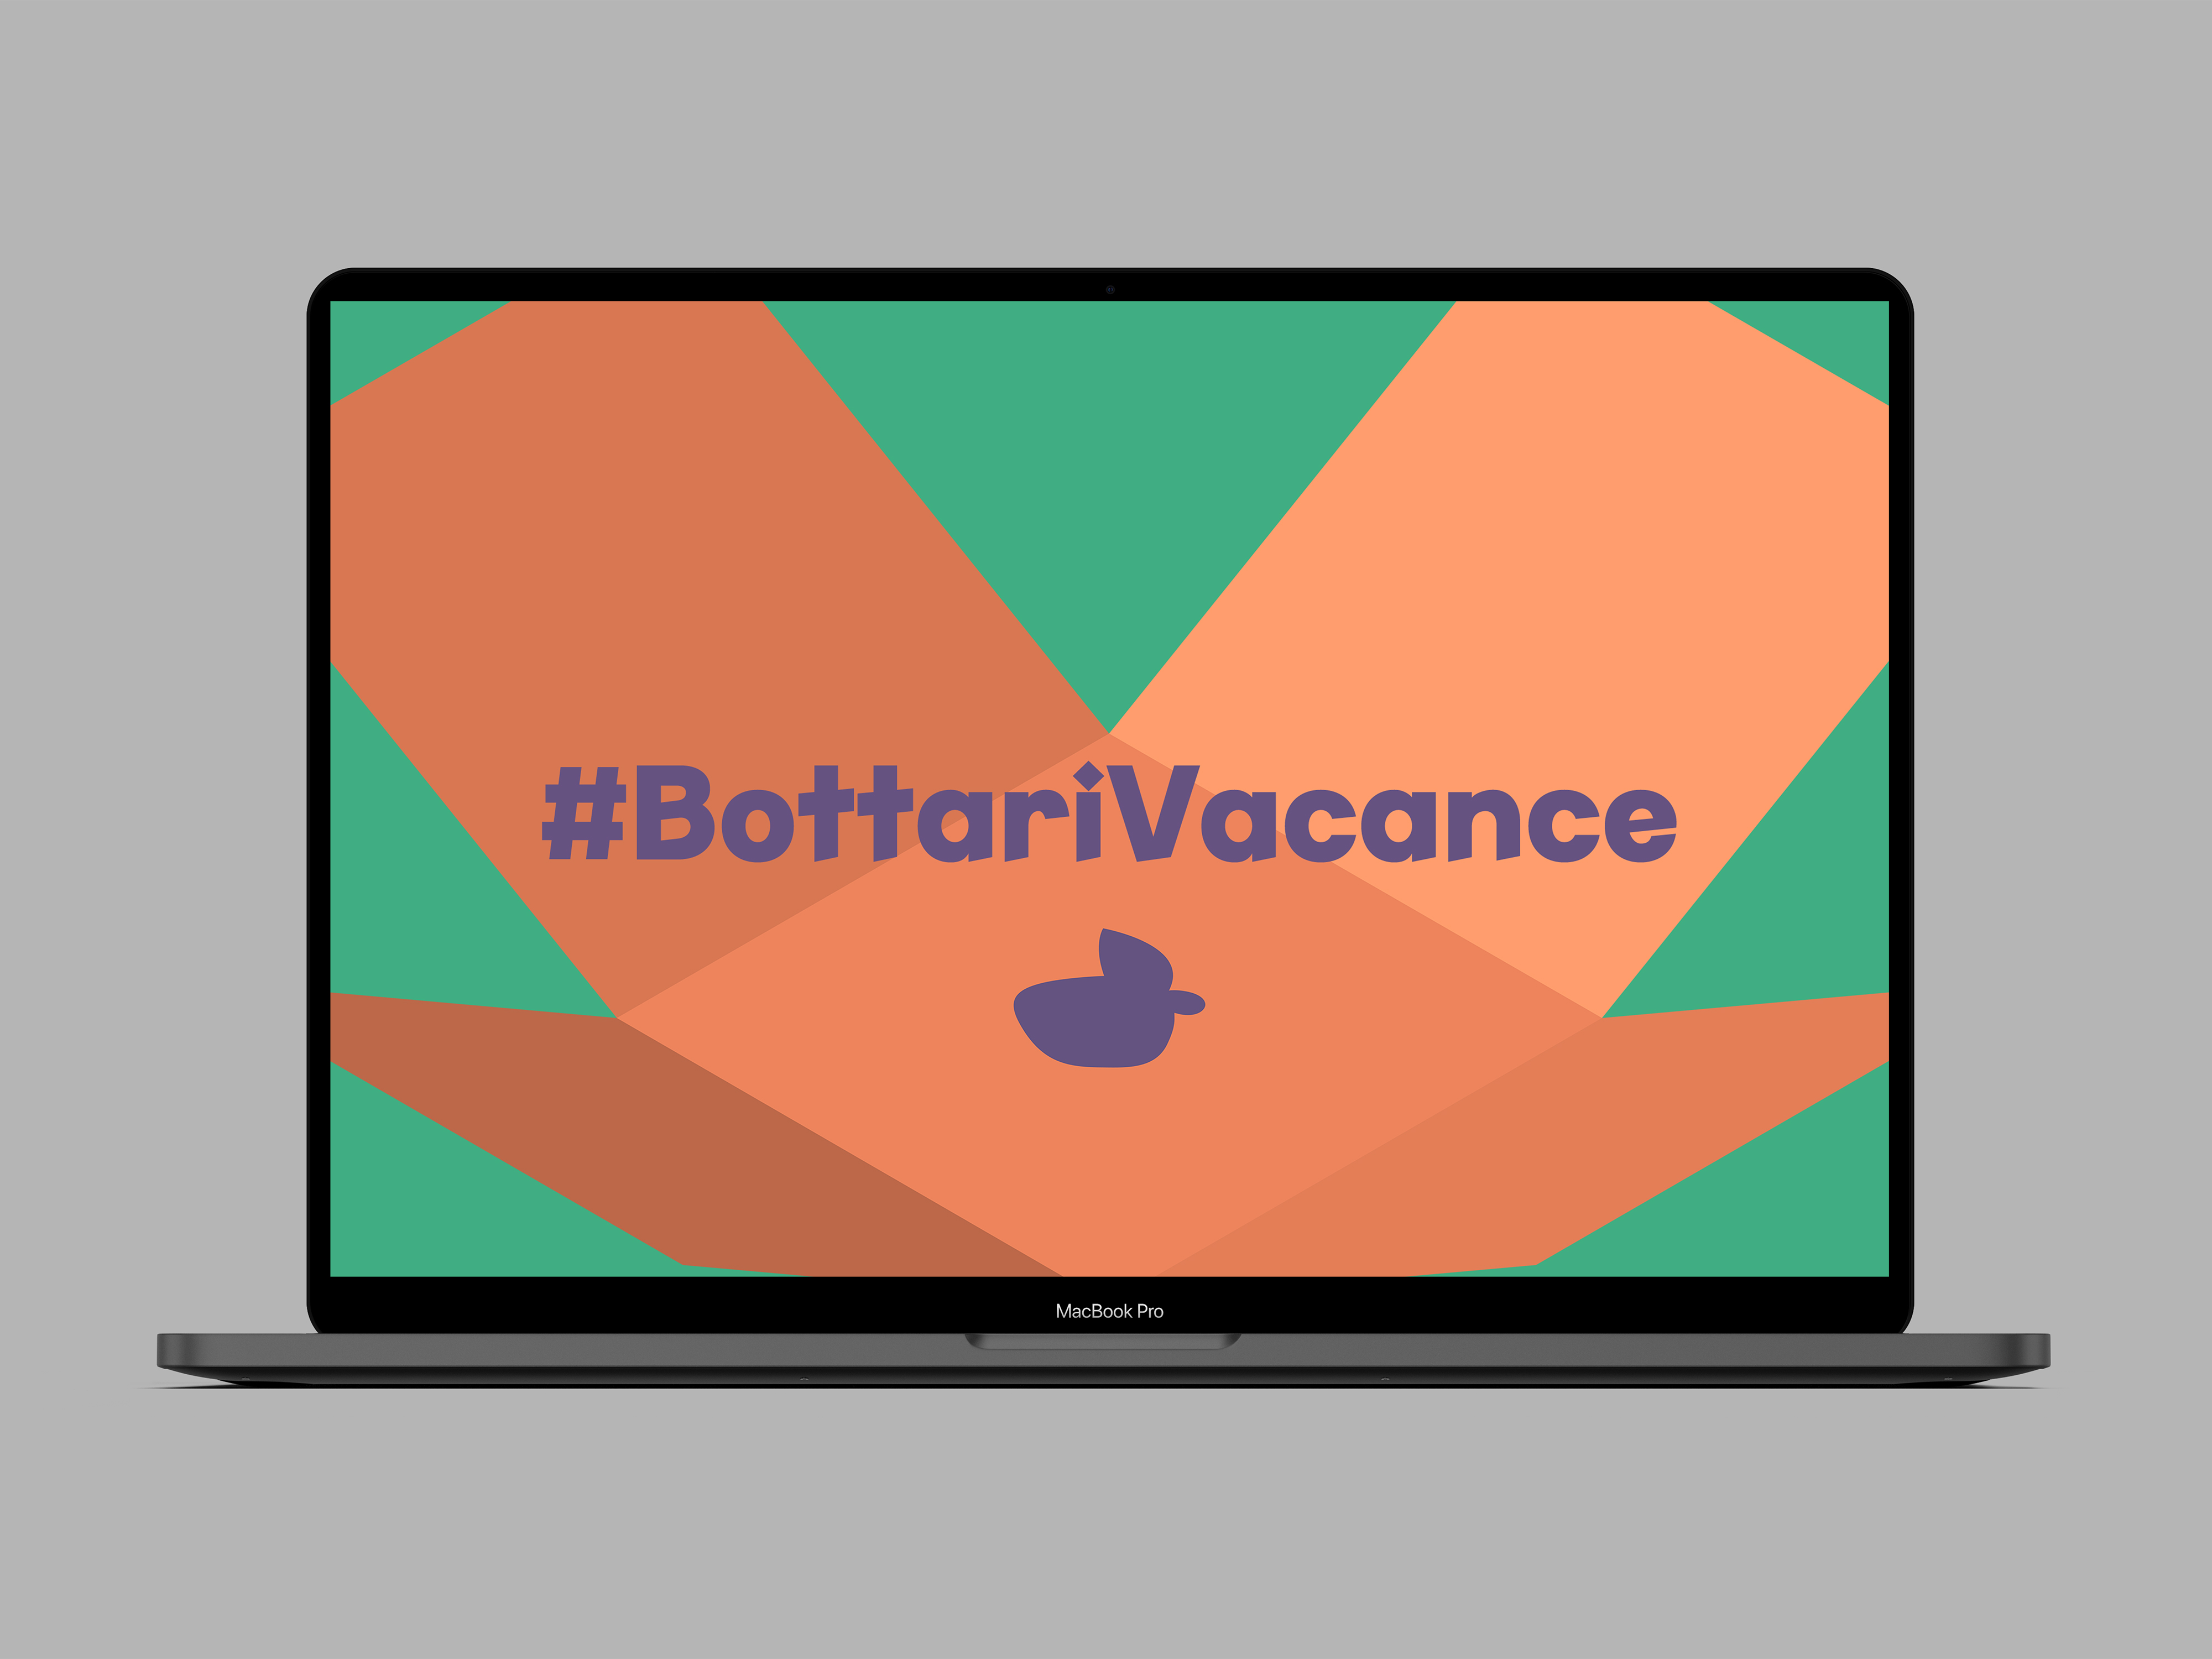 #BottariVacance Online Exhibition